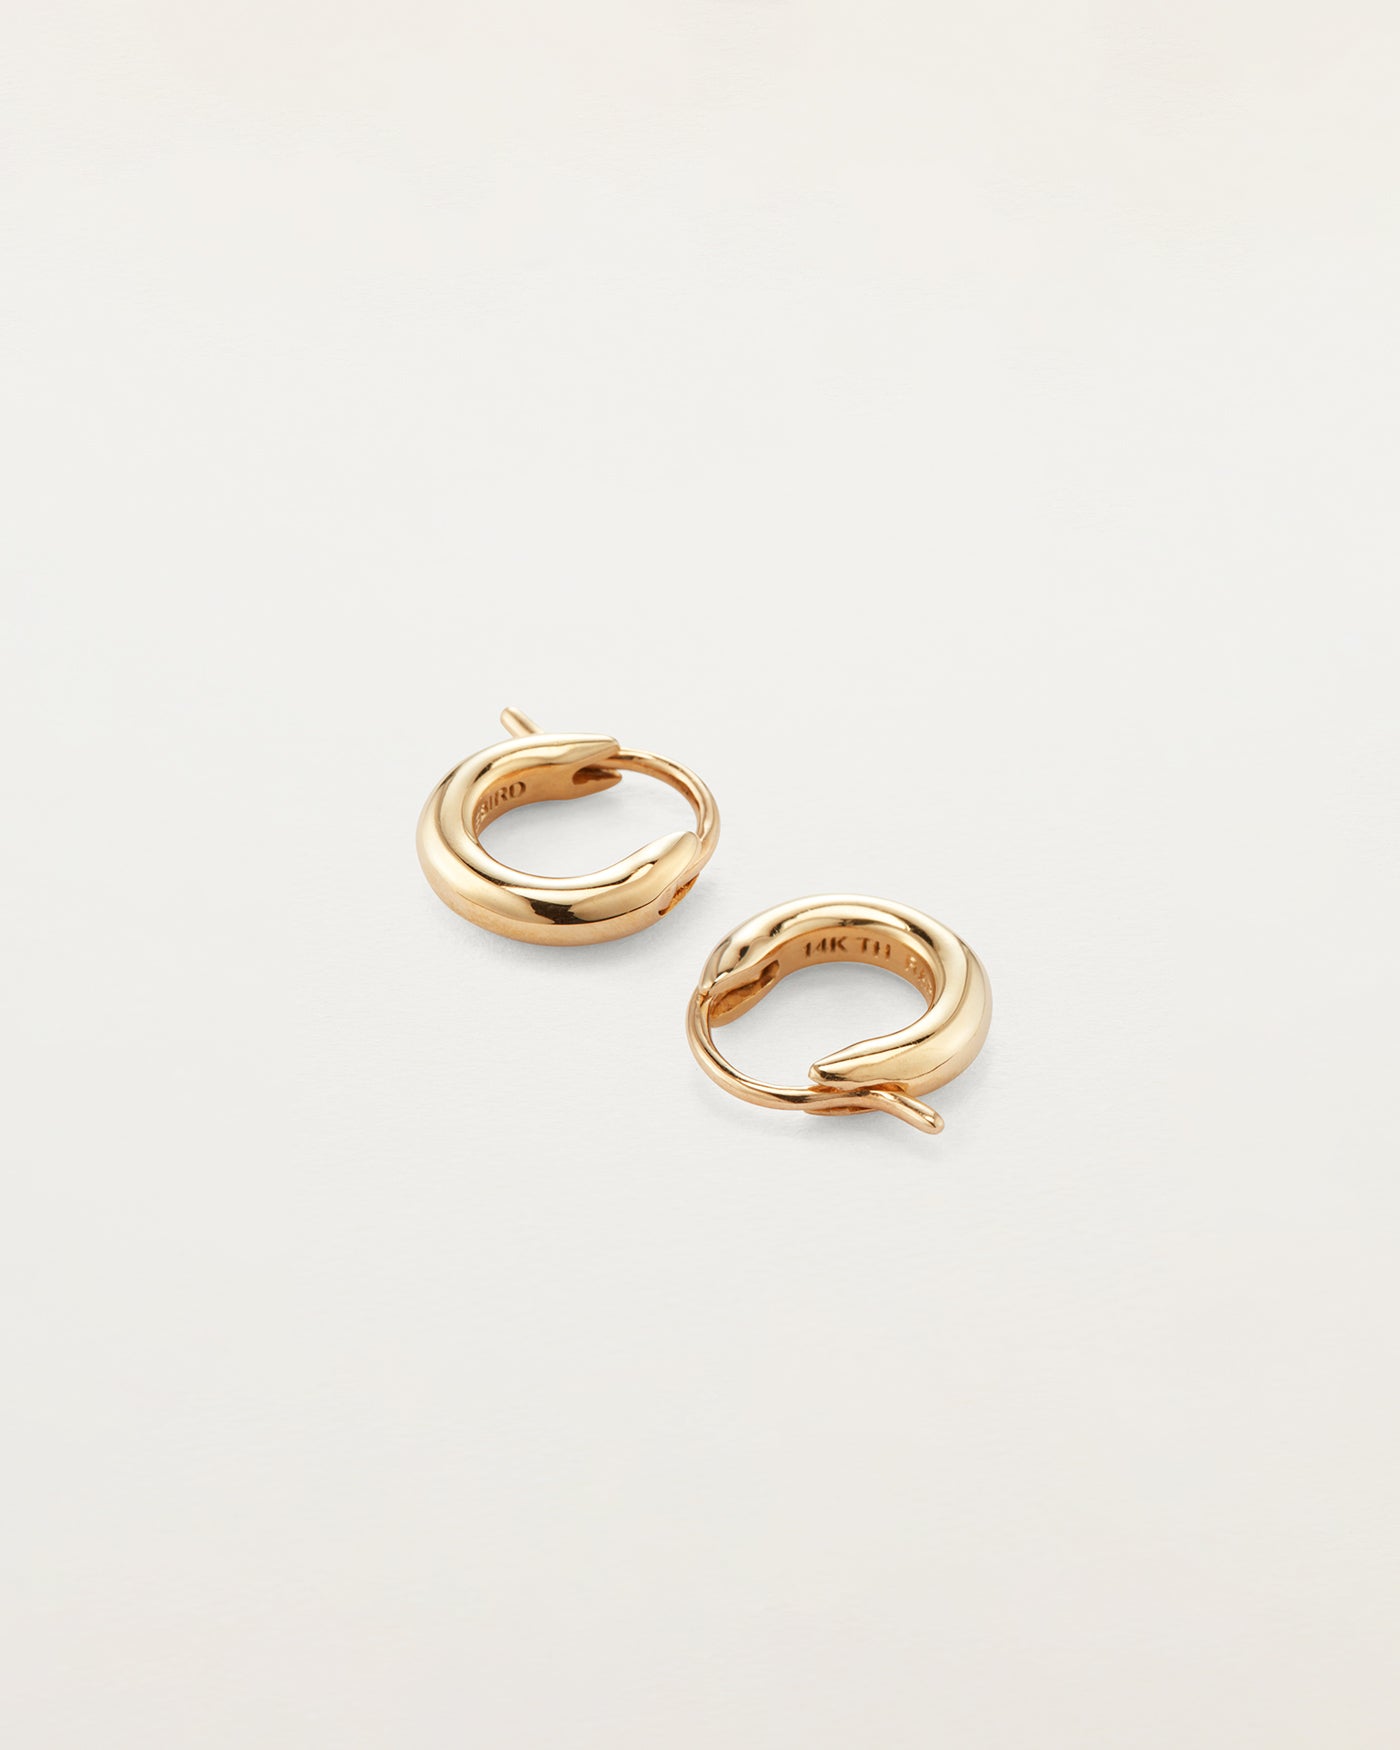 Adorna 14K White Gold Huggie Hoop Earrings: Timeless Elegance - 1/2